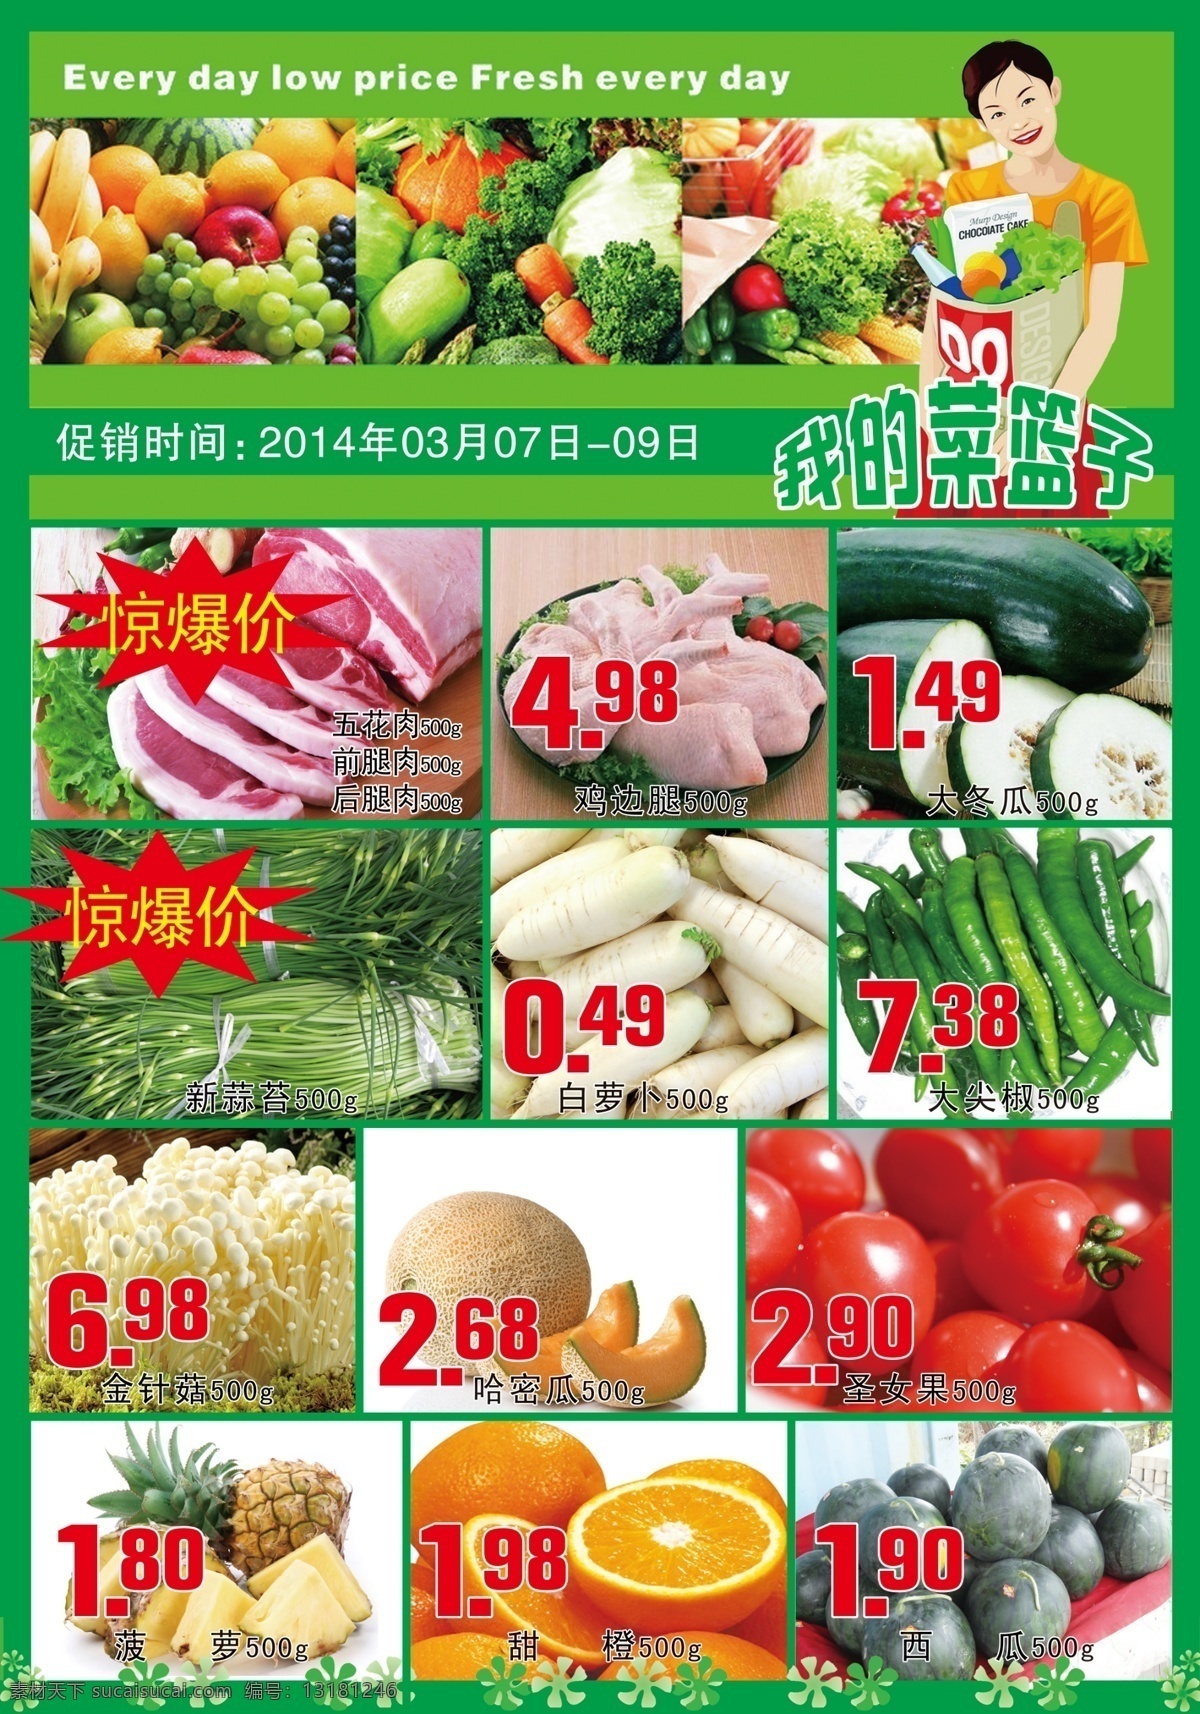 生鲜海报 超市 dm 海报 猪肉 甜品 烤鸭 水果蔬菜 菜篮子 女人 绿色 广告设计模板 源文件